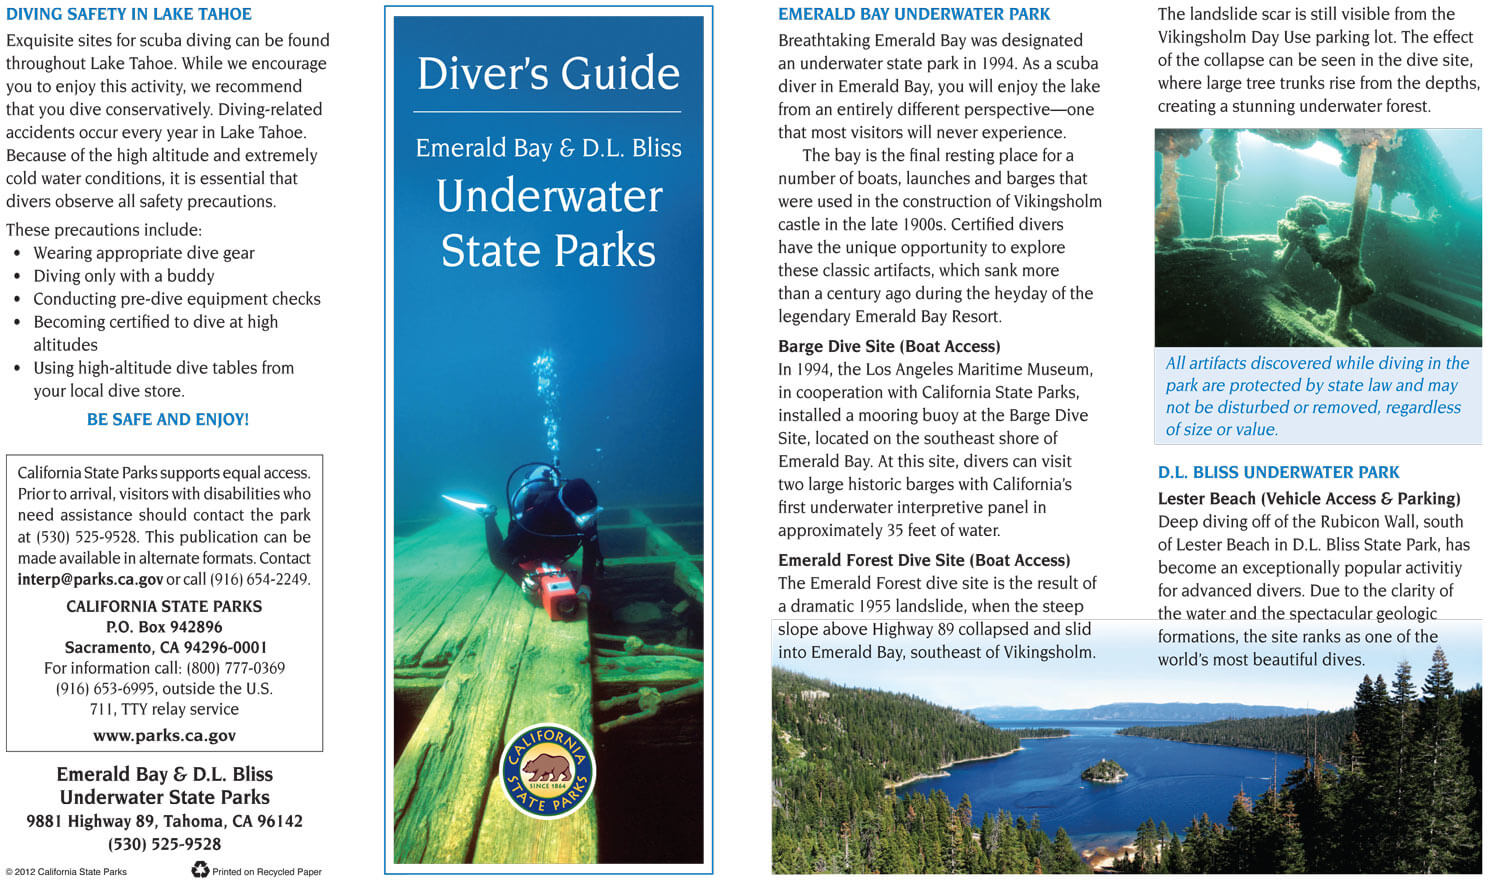 Emerald Bay Underwater State Park